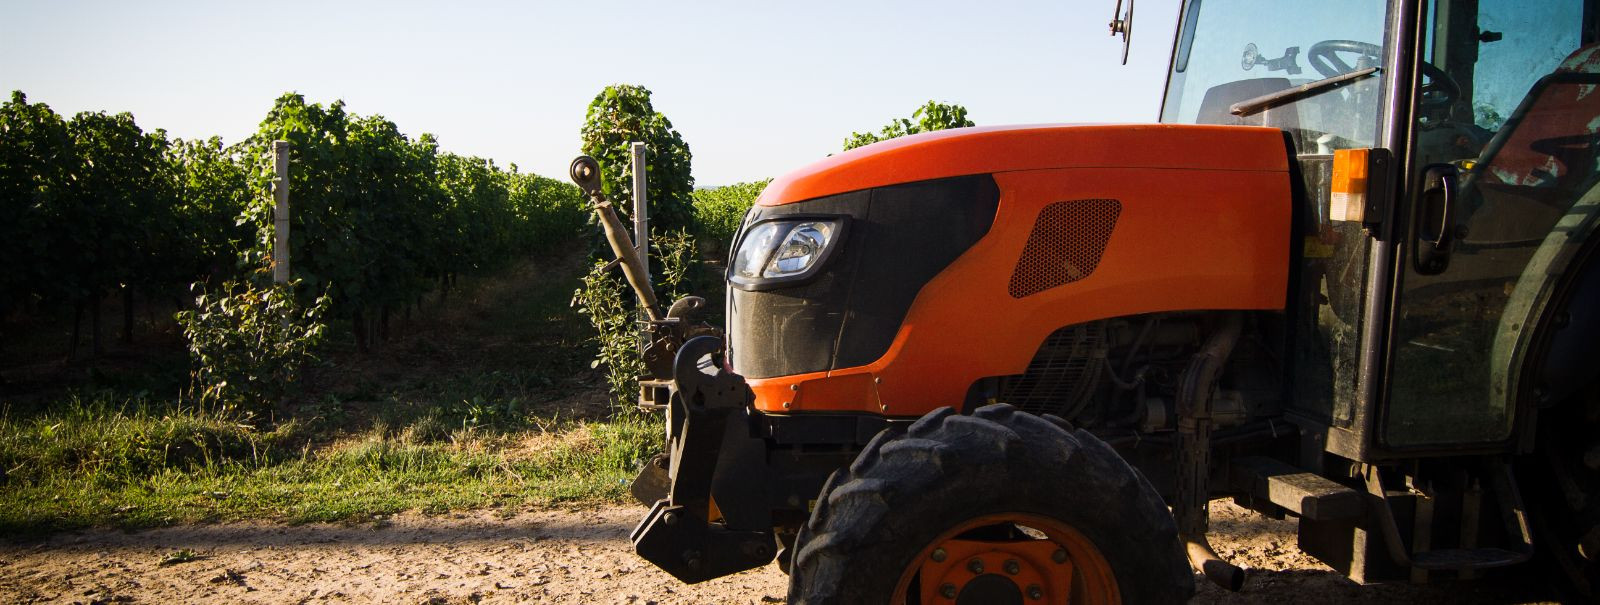 Põllumajandusprofessionaalidele ja ehitusettevõtetele on traktor ...